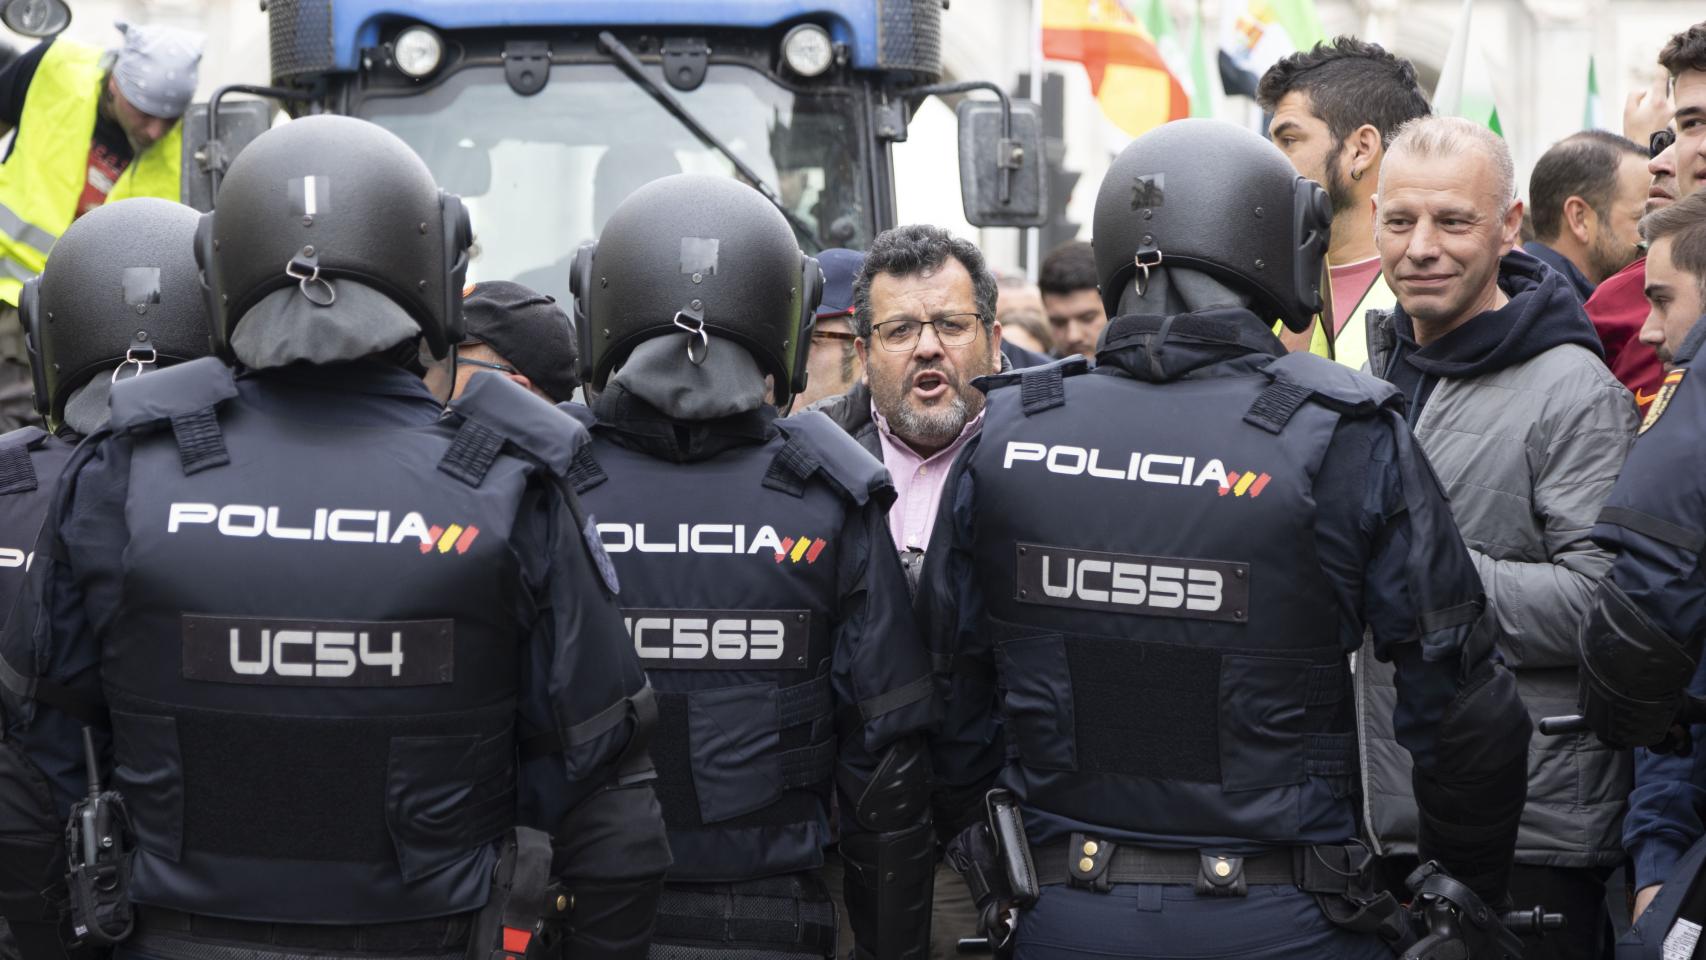 Agentes de la Policía Nacional frente a manifestantes y tractores